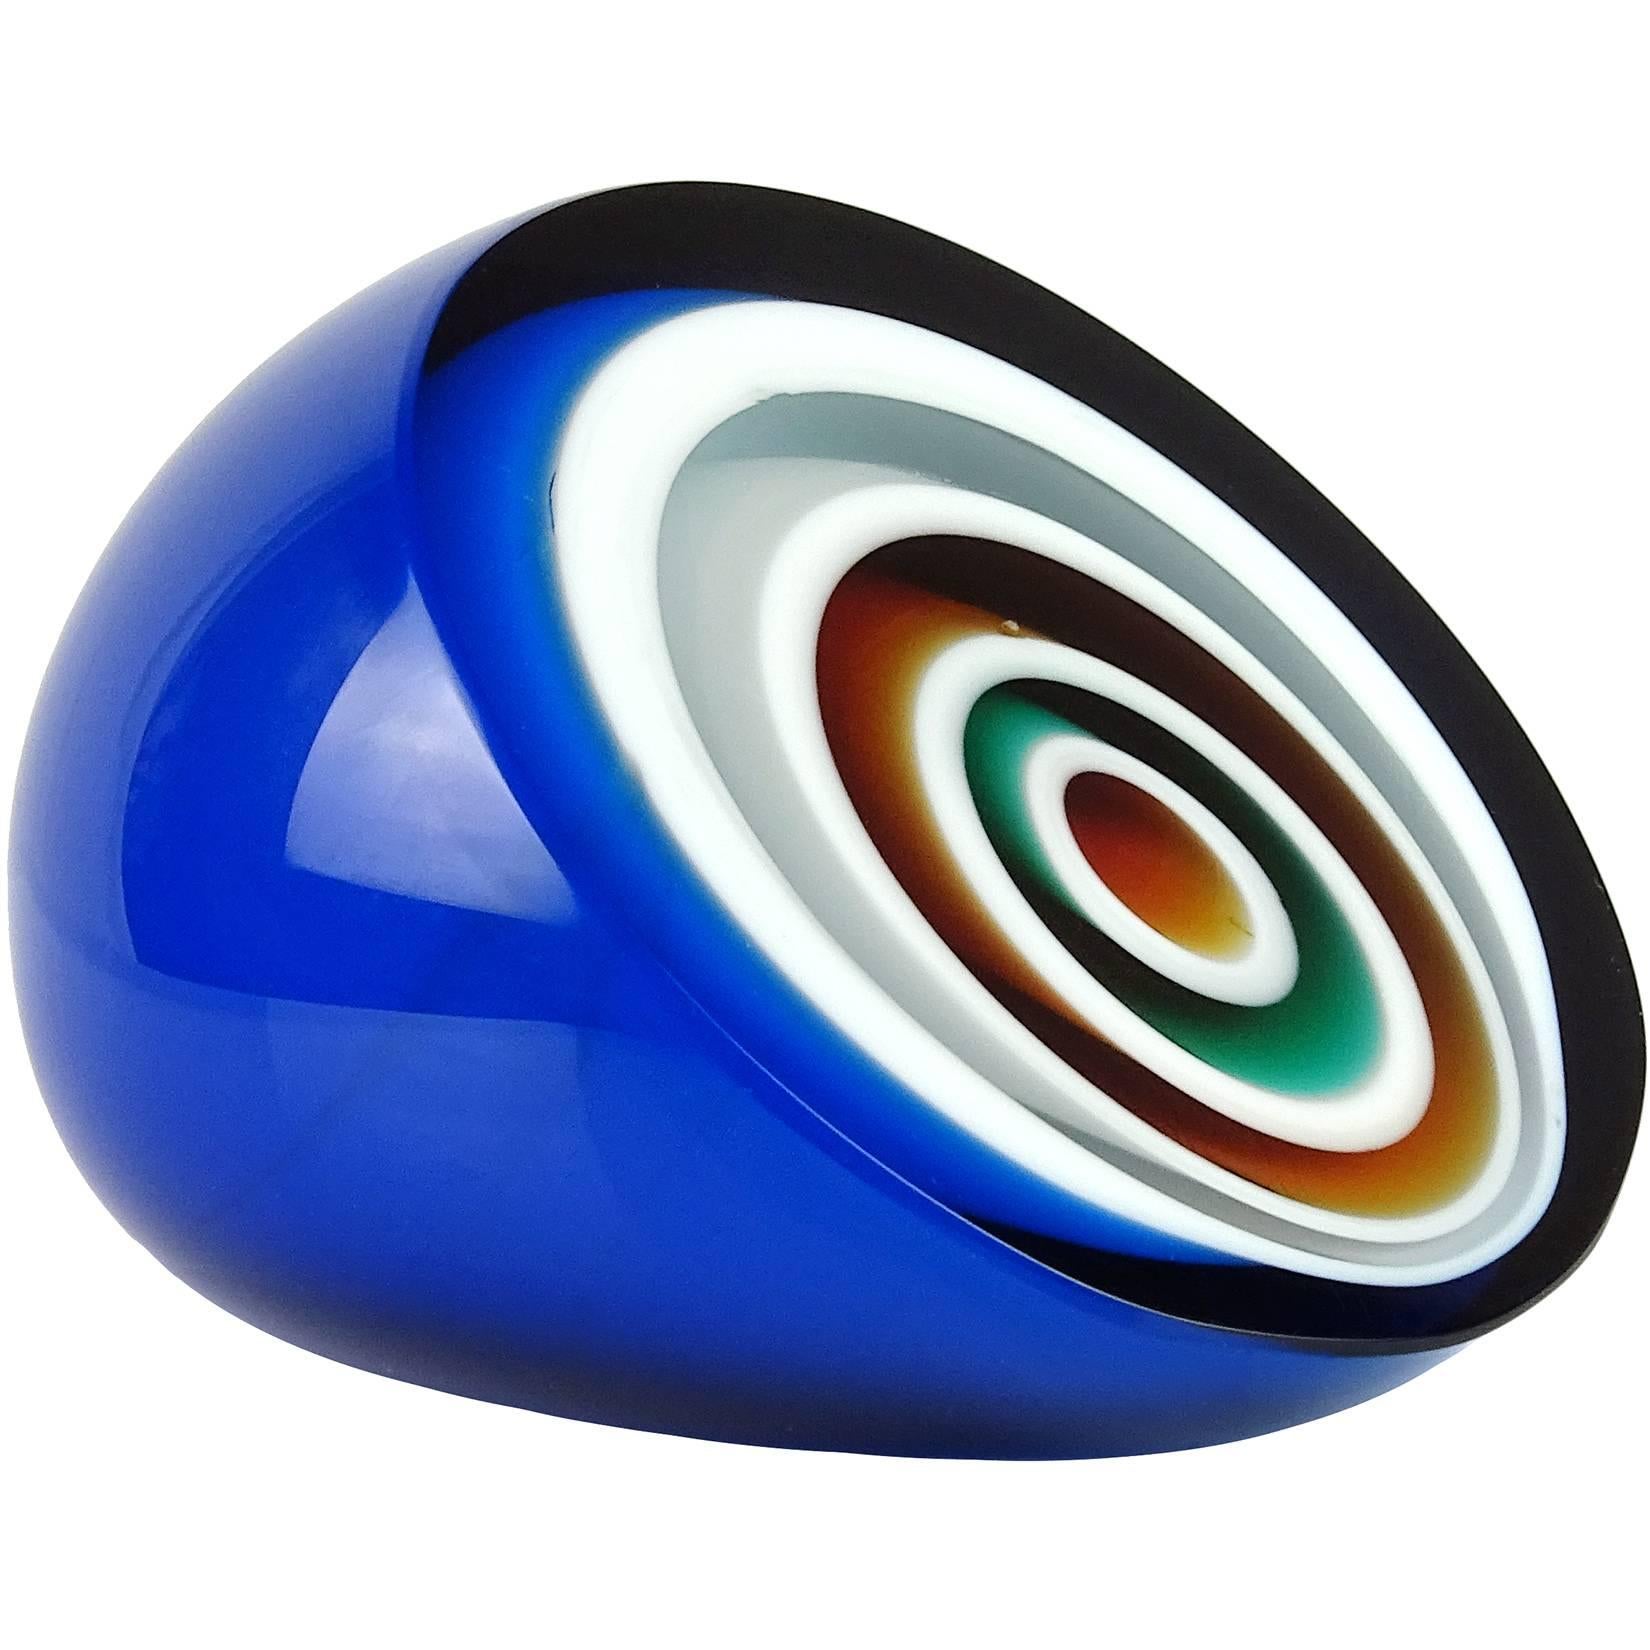 Vistosi Murano Blue White Orange Black Bullseye Italian Art Glass Paperweight